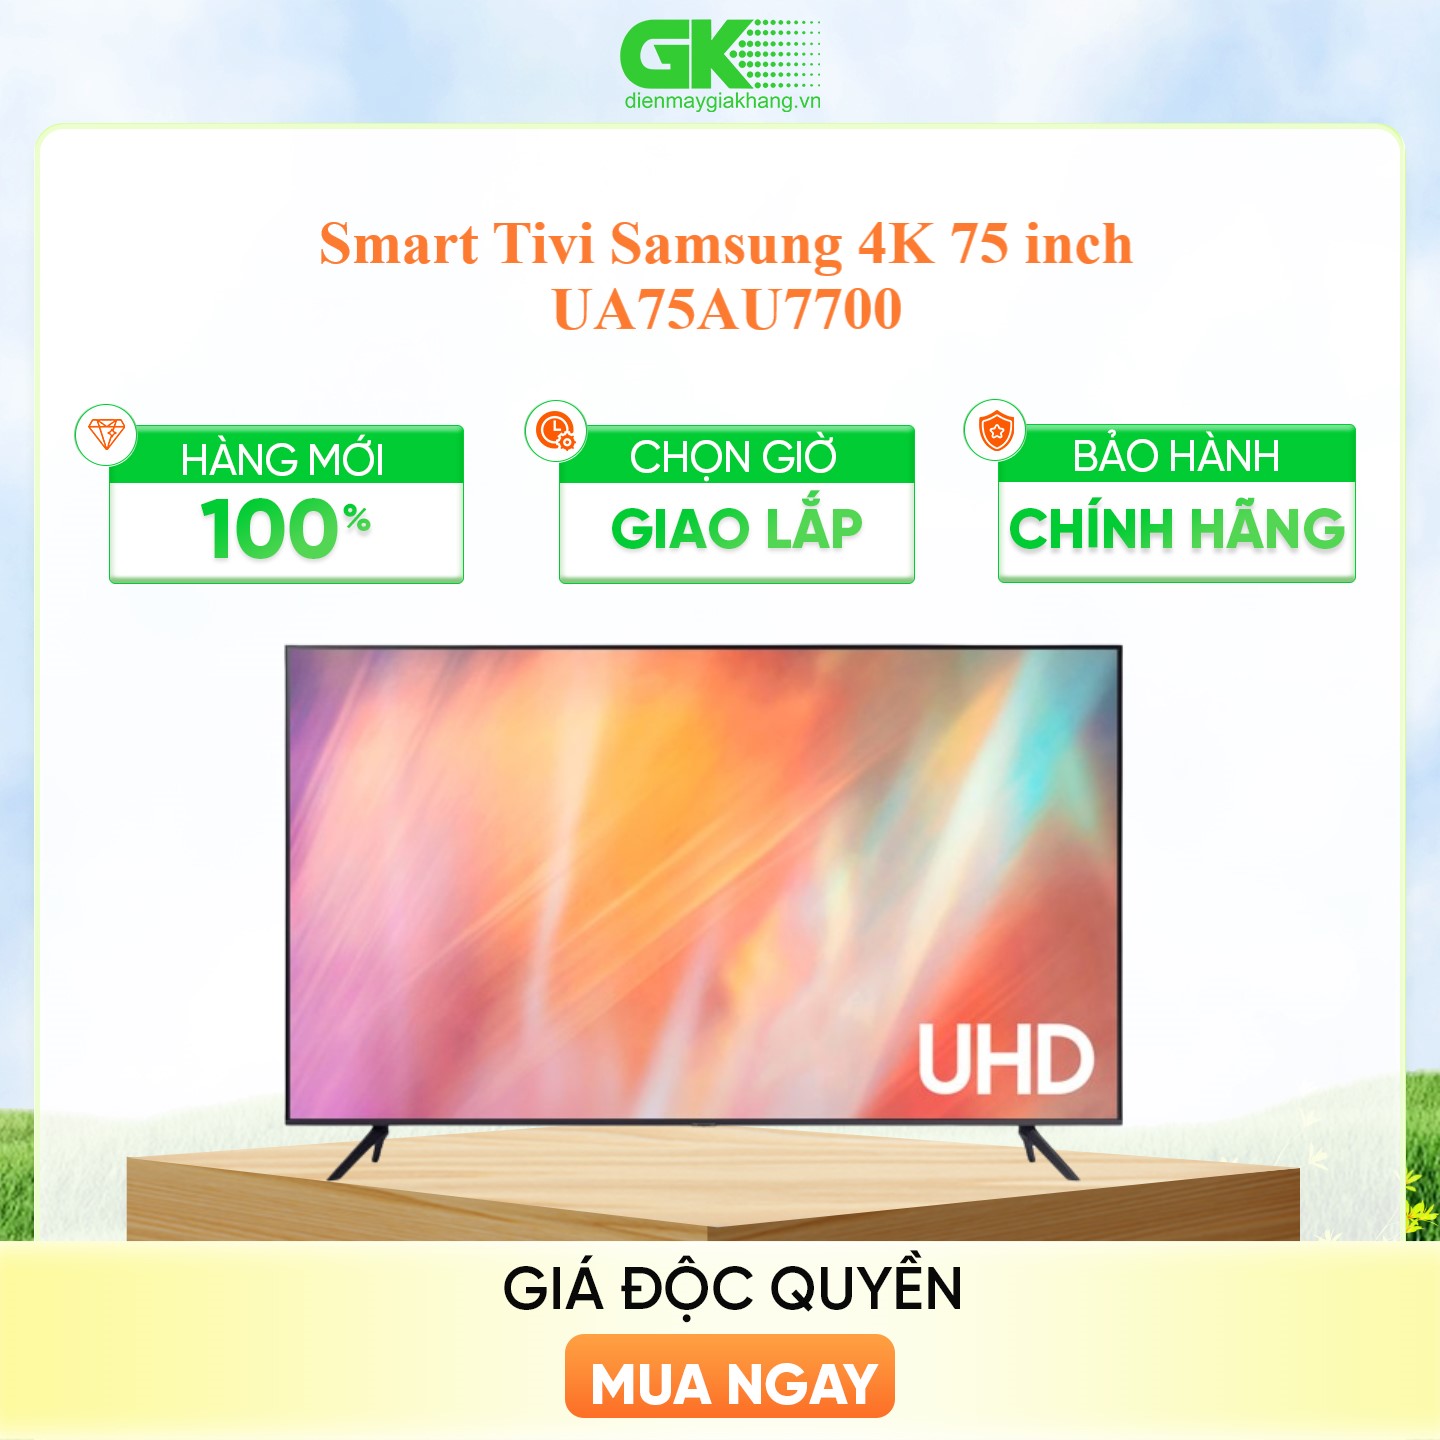 Smart Tivi Samsung 4K 75 inch UA75AU7700